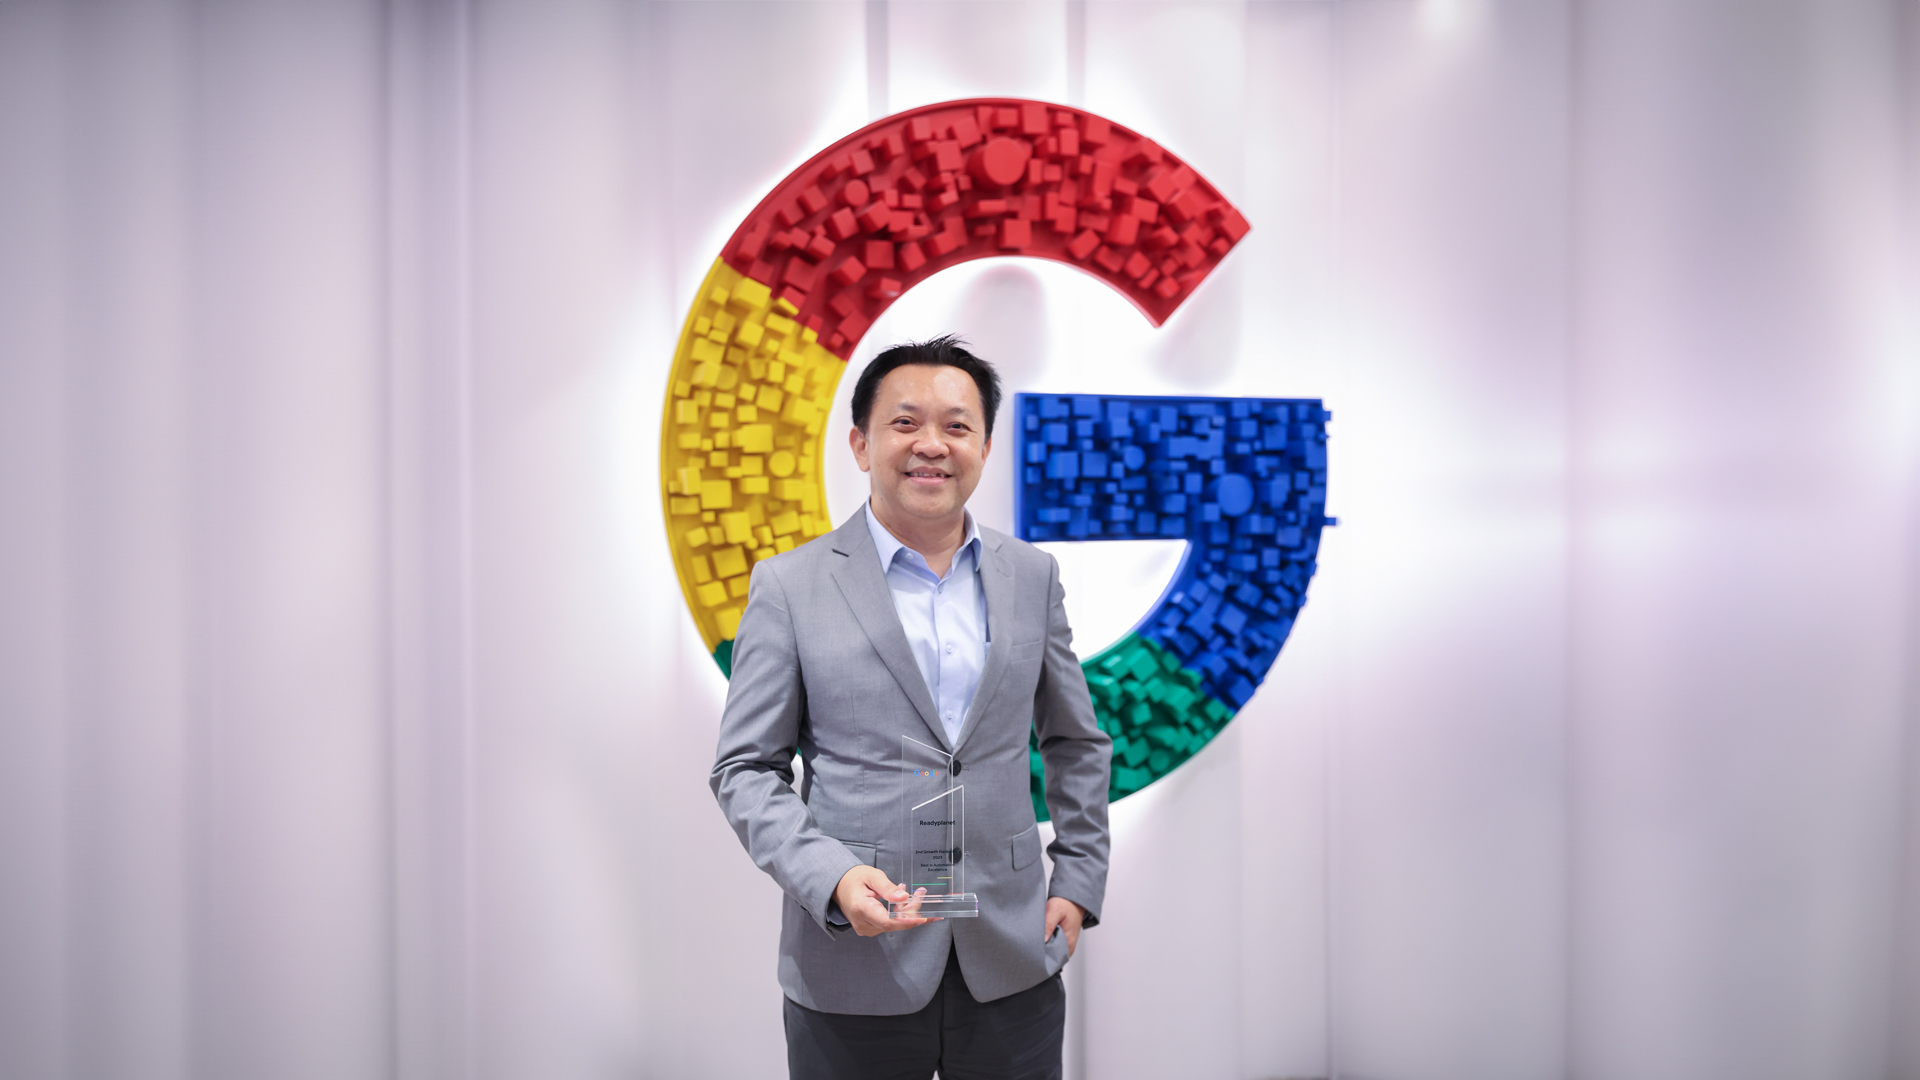 คุณบุรินทร์ เกล็ดมณี รองกรรมการผู้จัดการบริหาร บริษัท เรดดี้แพลนเน็ต จำกัด (มหาชน) รับรางวัล Best Automation Excellence Awards 2024 โดย Google ประเทศไทย